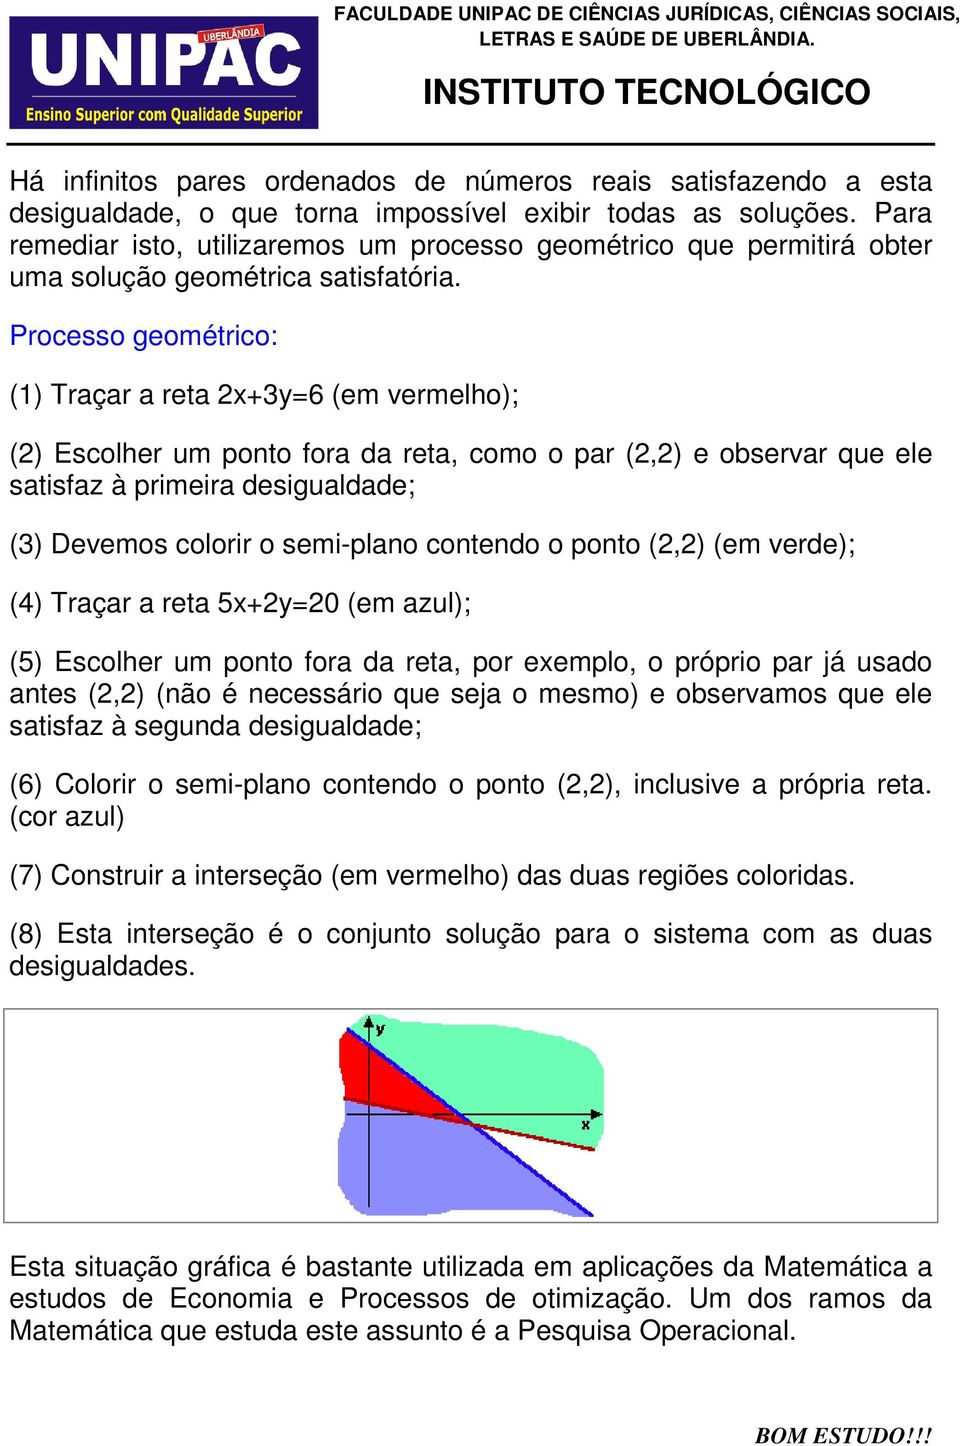 Processo geométrico: (1) Traçar a reta 2x+3y=6 (em vermelho); (2) Escolher um ponto fora da reta, como o par (2,2) e observar que ele satisfaz à primeira desigualdade; (3) Devemos colorir o